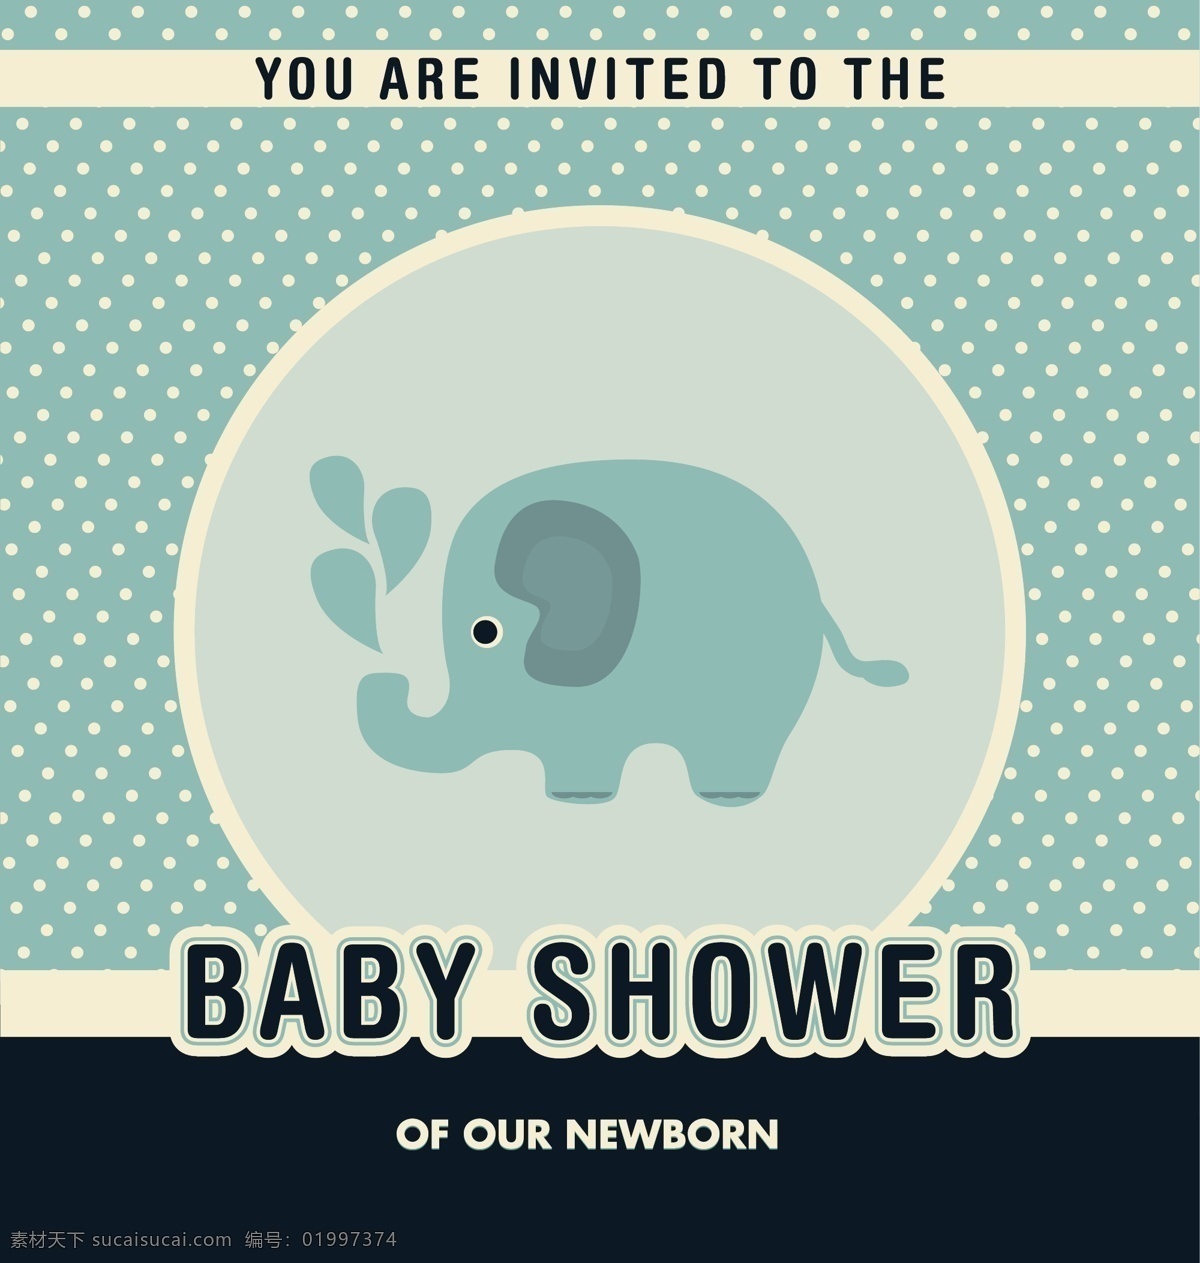 婴儿 洗澡 邀请 背景 卡片 模板 婴儿淋浴 请柬 墙纸 颜色 庆祝 儿童 大象 丰富多彩 新的 婴儿背景 公告 淋浴